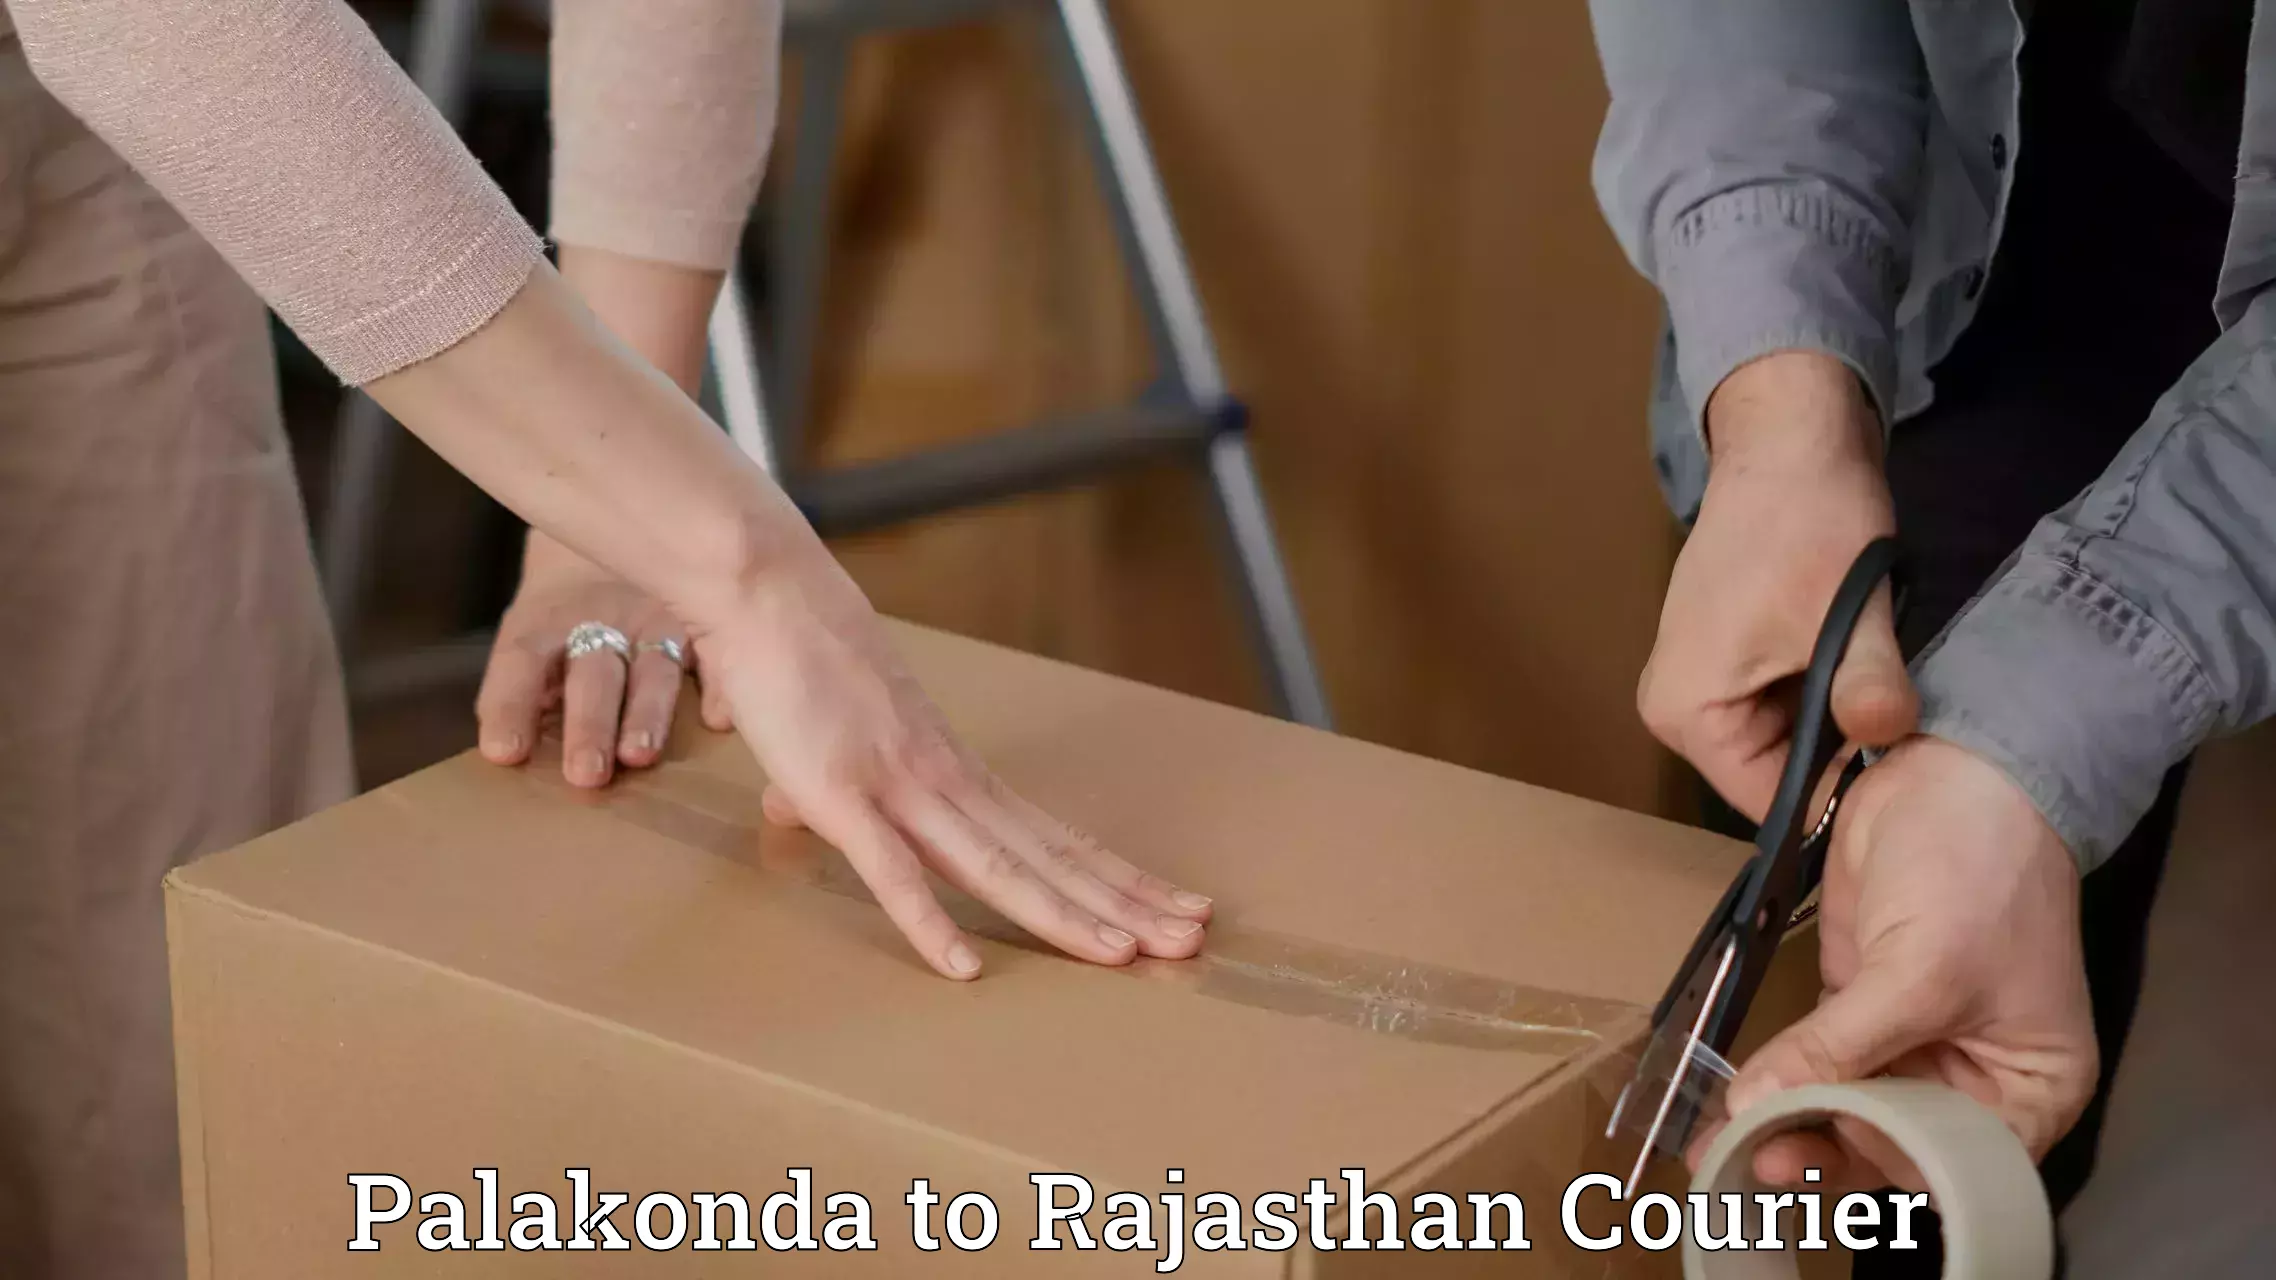 Professional courier handling Palakonda to Aklera